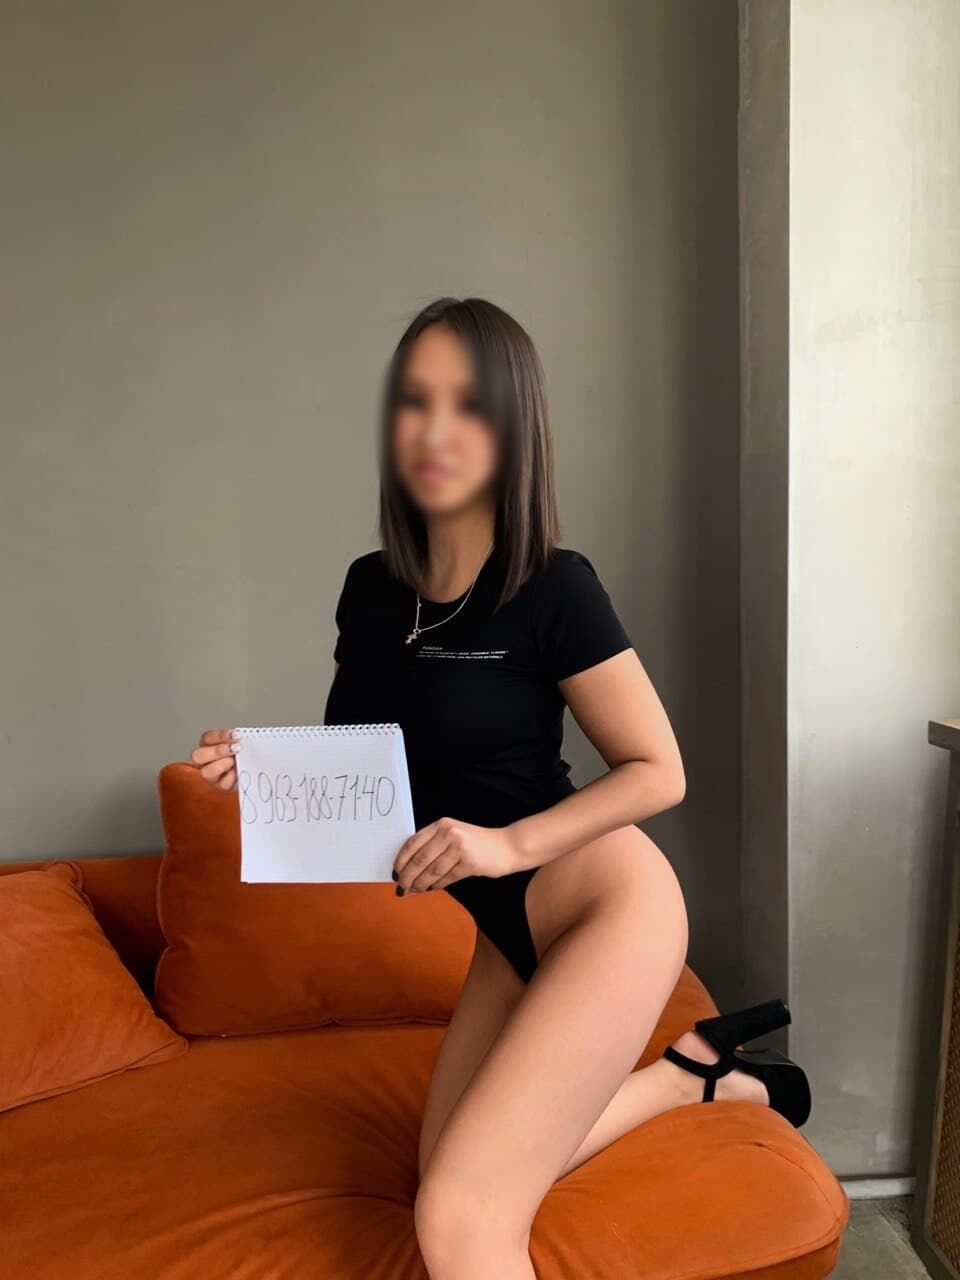 Проститутка Милана 21 лет сделает профессионально групповой секс и пригласит к себе